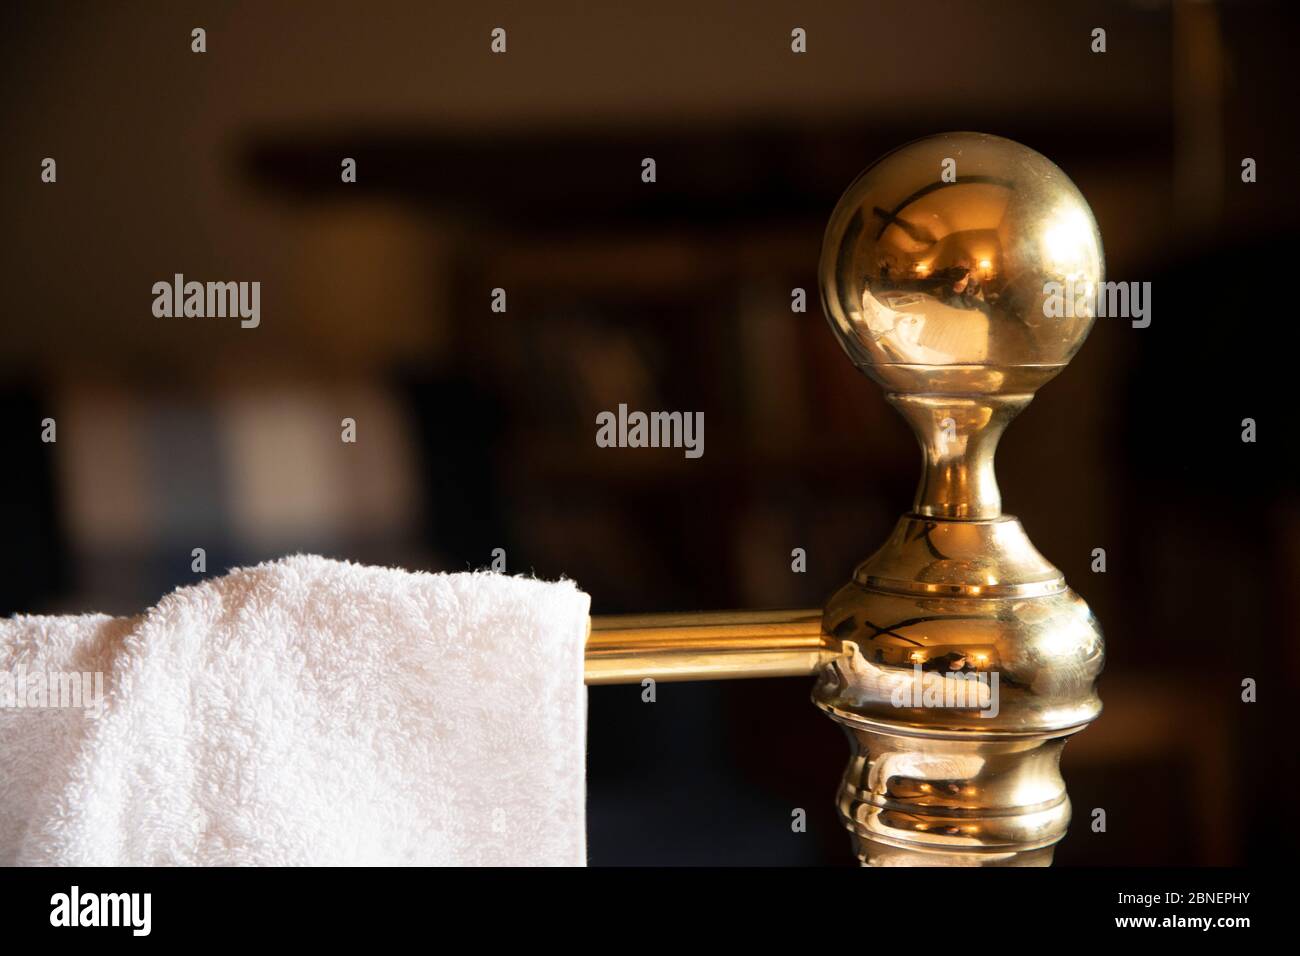 Imagen genérica del concepto de una estancia en hotel - toalla de algodón blanco en la vieja cabecera de latón con pomo tradicional en un pintoresco dormitorio de hotel en el Cotswold Foto de stock